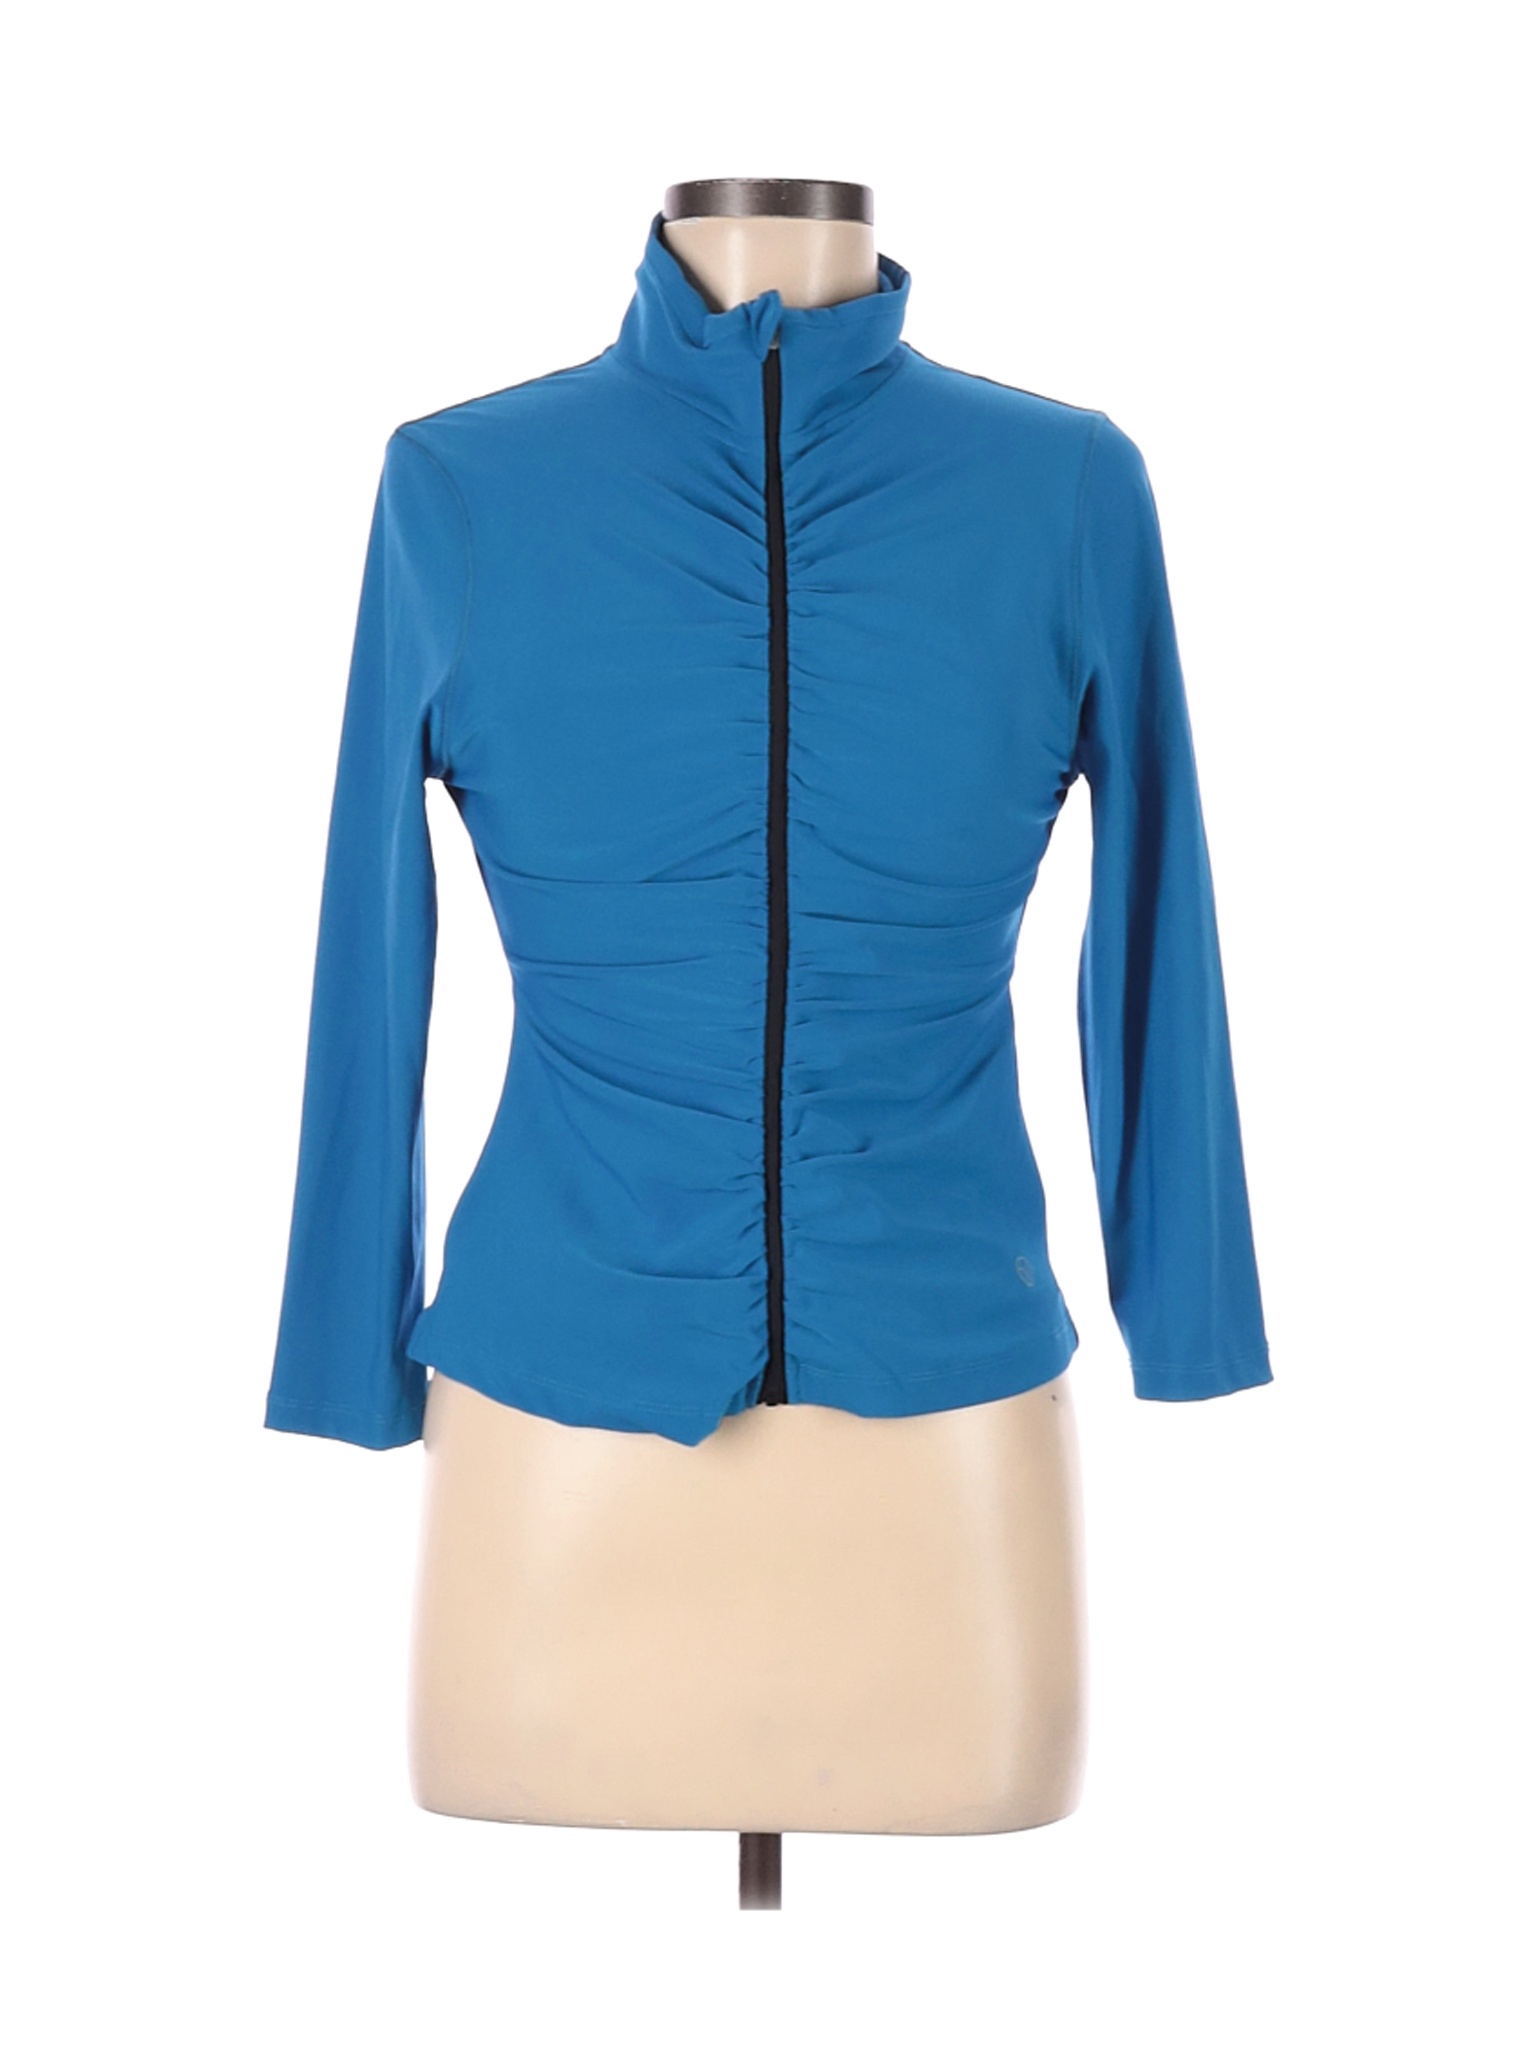 Vogo Women Blue Track Jacket M | eBay